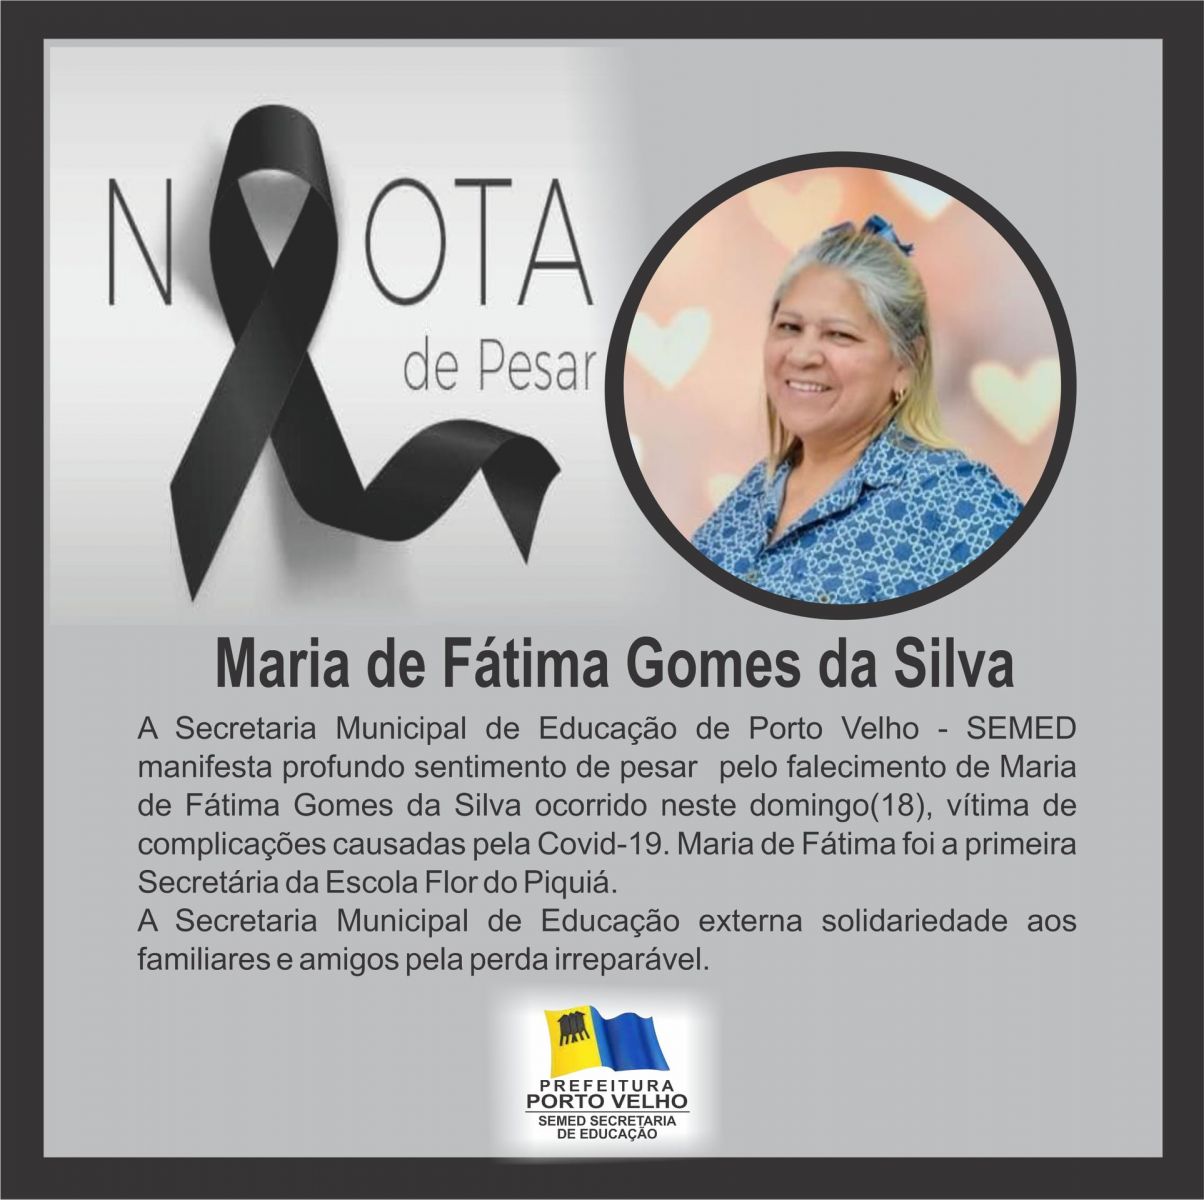 NOTA DE PESAR: pelo falecimento de Maria de Fátima Gomes da Silva - News Rondônia